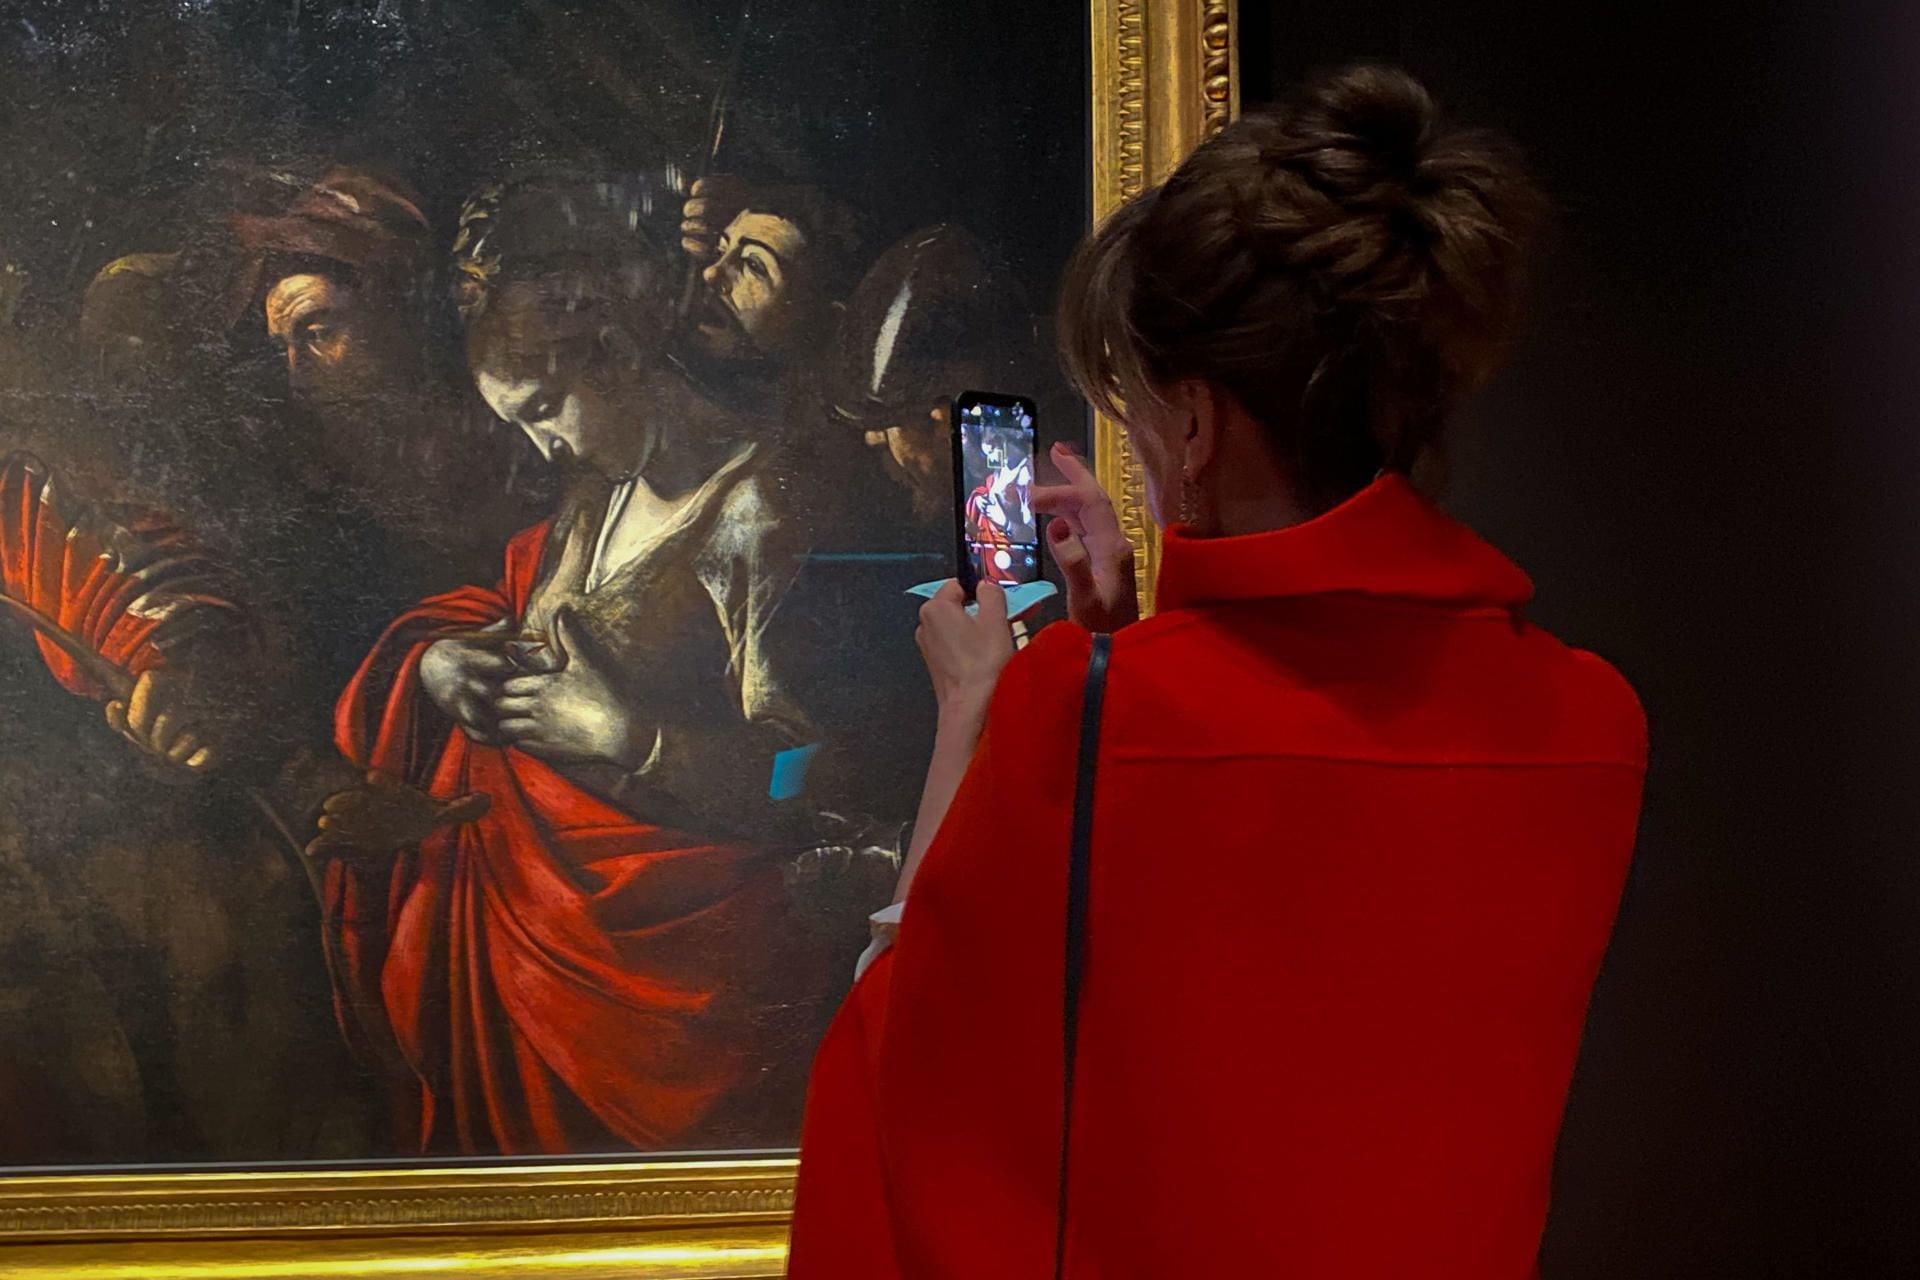 Regresan a la National Gallery sombras del último Caravaggio